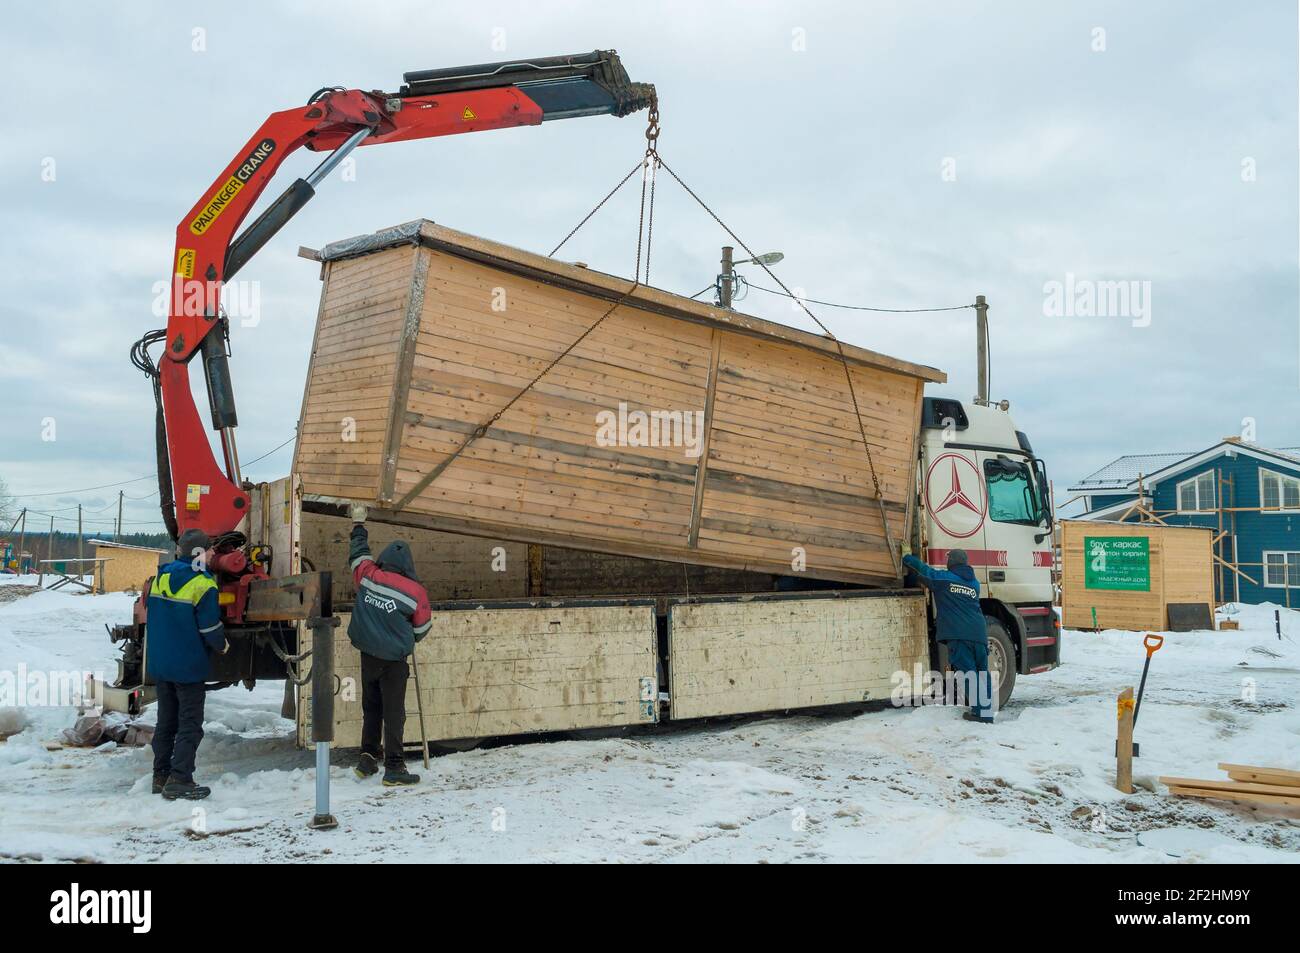 REGIONE DI LENINGRAD, RUSSIA - 04 MARZO 2021: Caricamento di una casa di costruzione su un camion Mercedes-Benz Actros con una gru manipolatrice Foto Stock